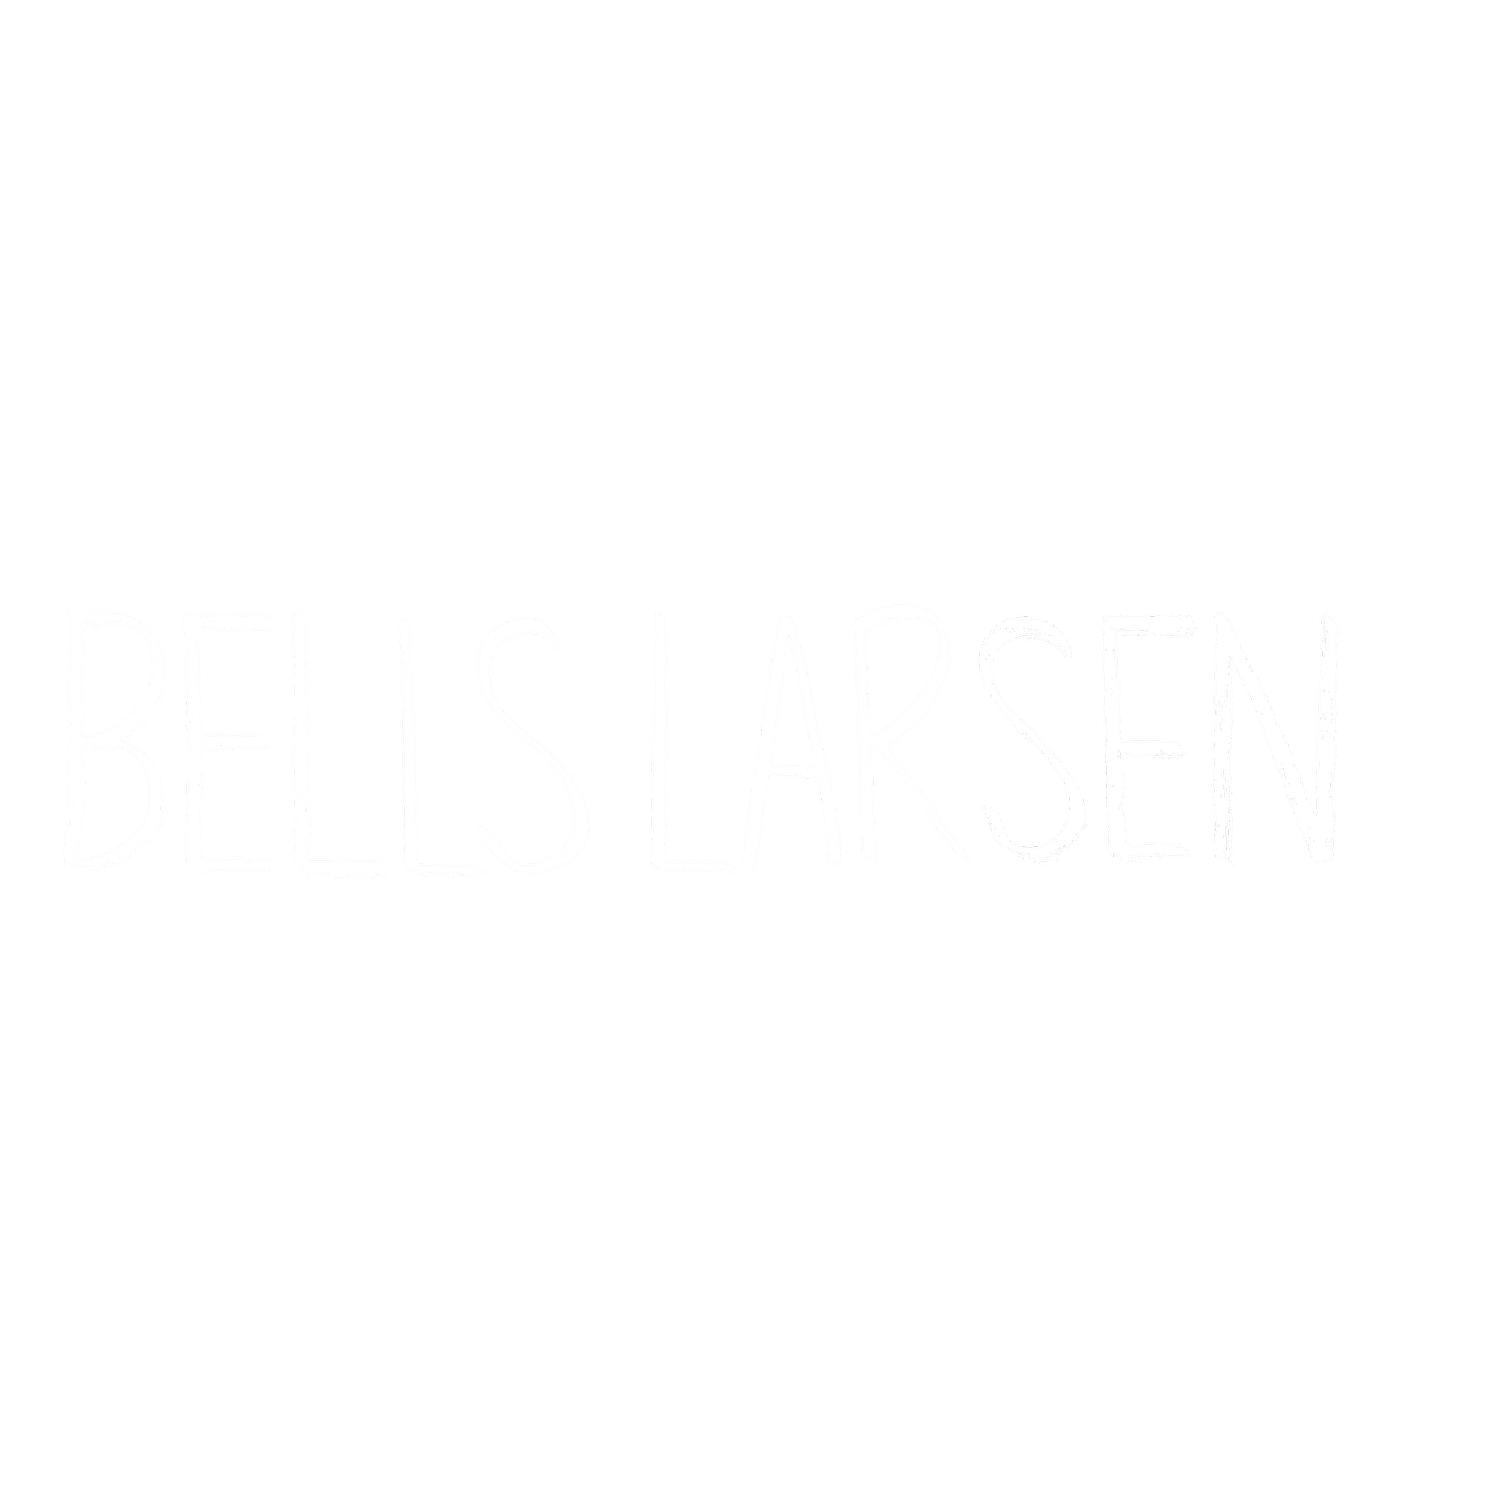 Bells Larsen